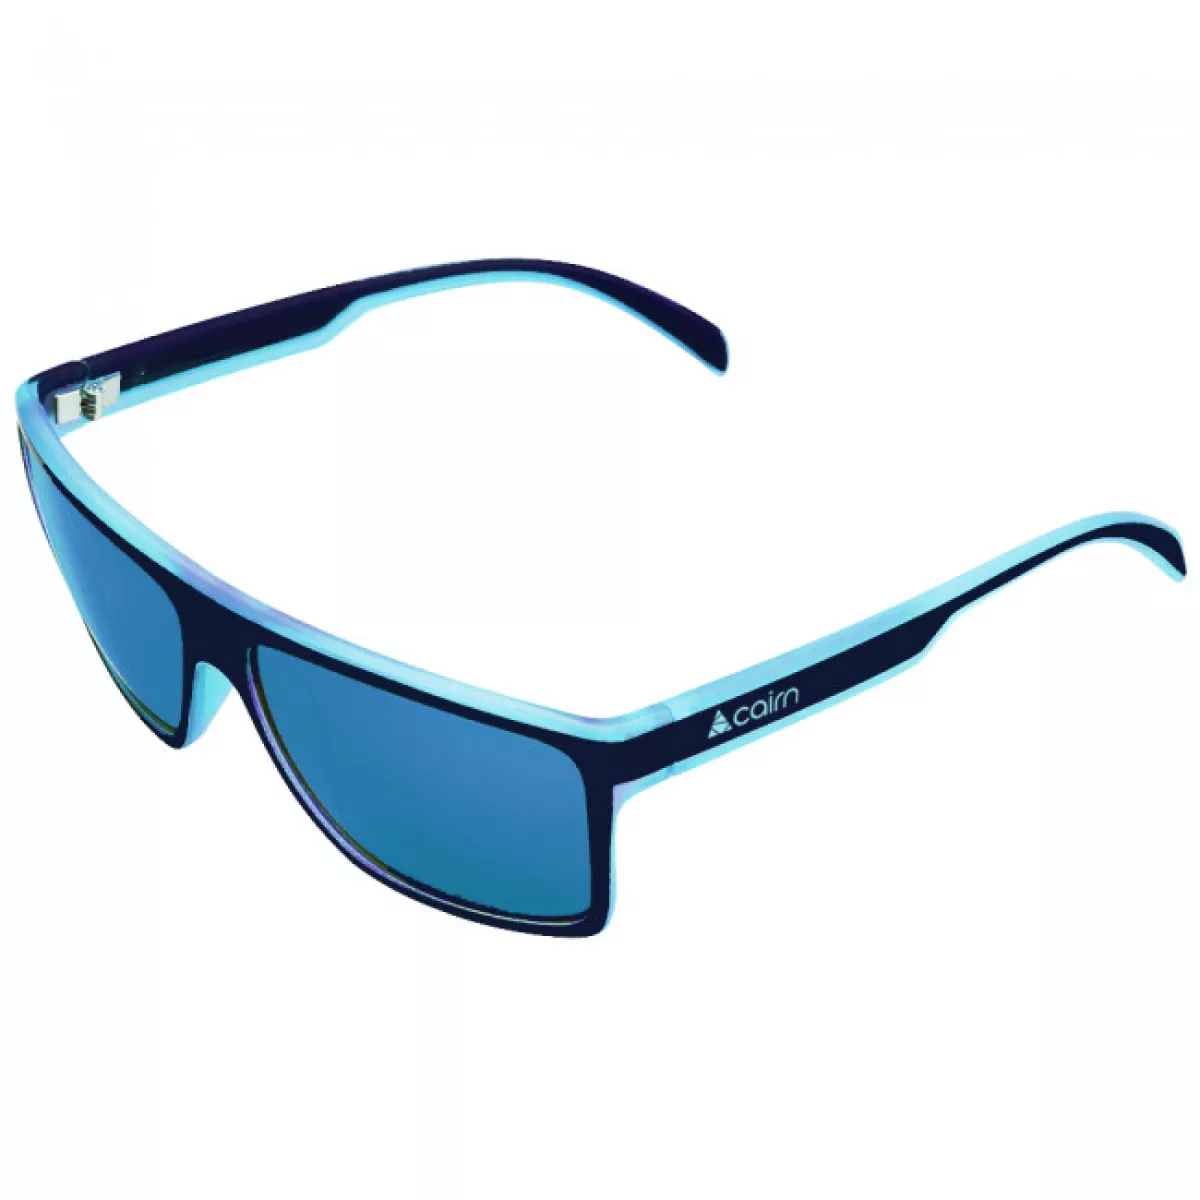 #2 - Cairn Fase, solbriller, sort/lyseblå